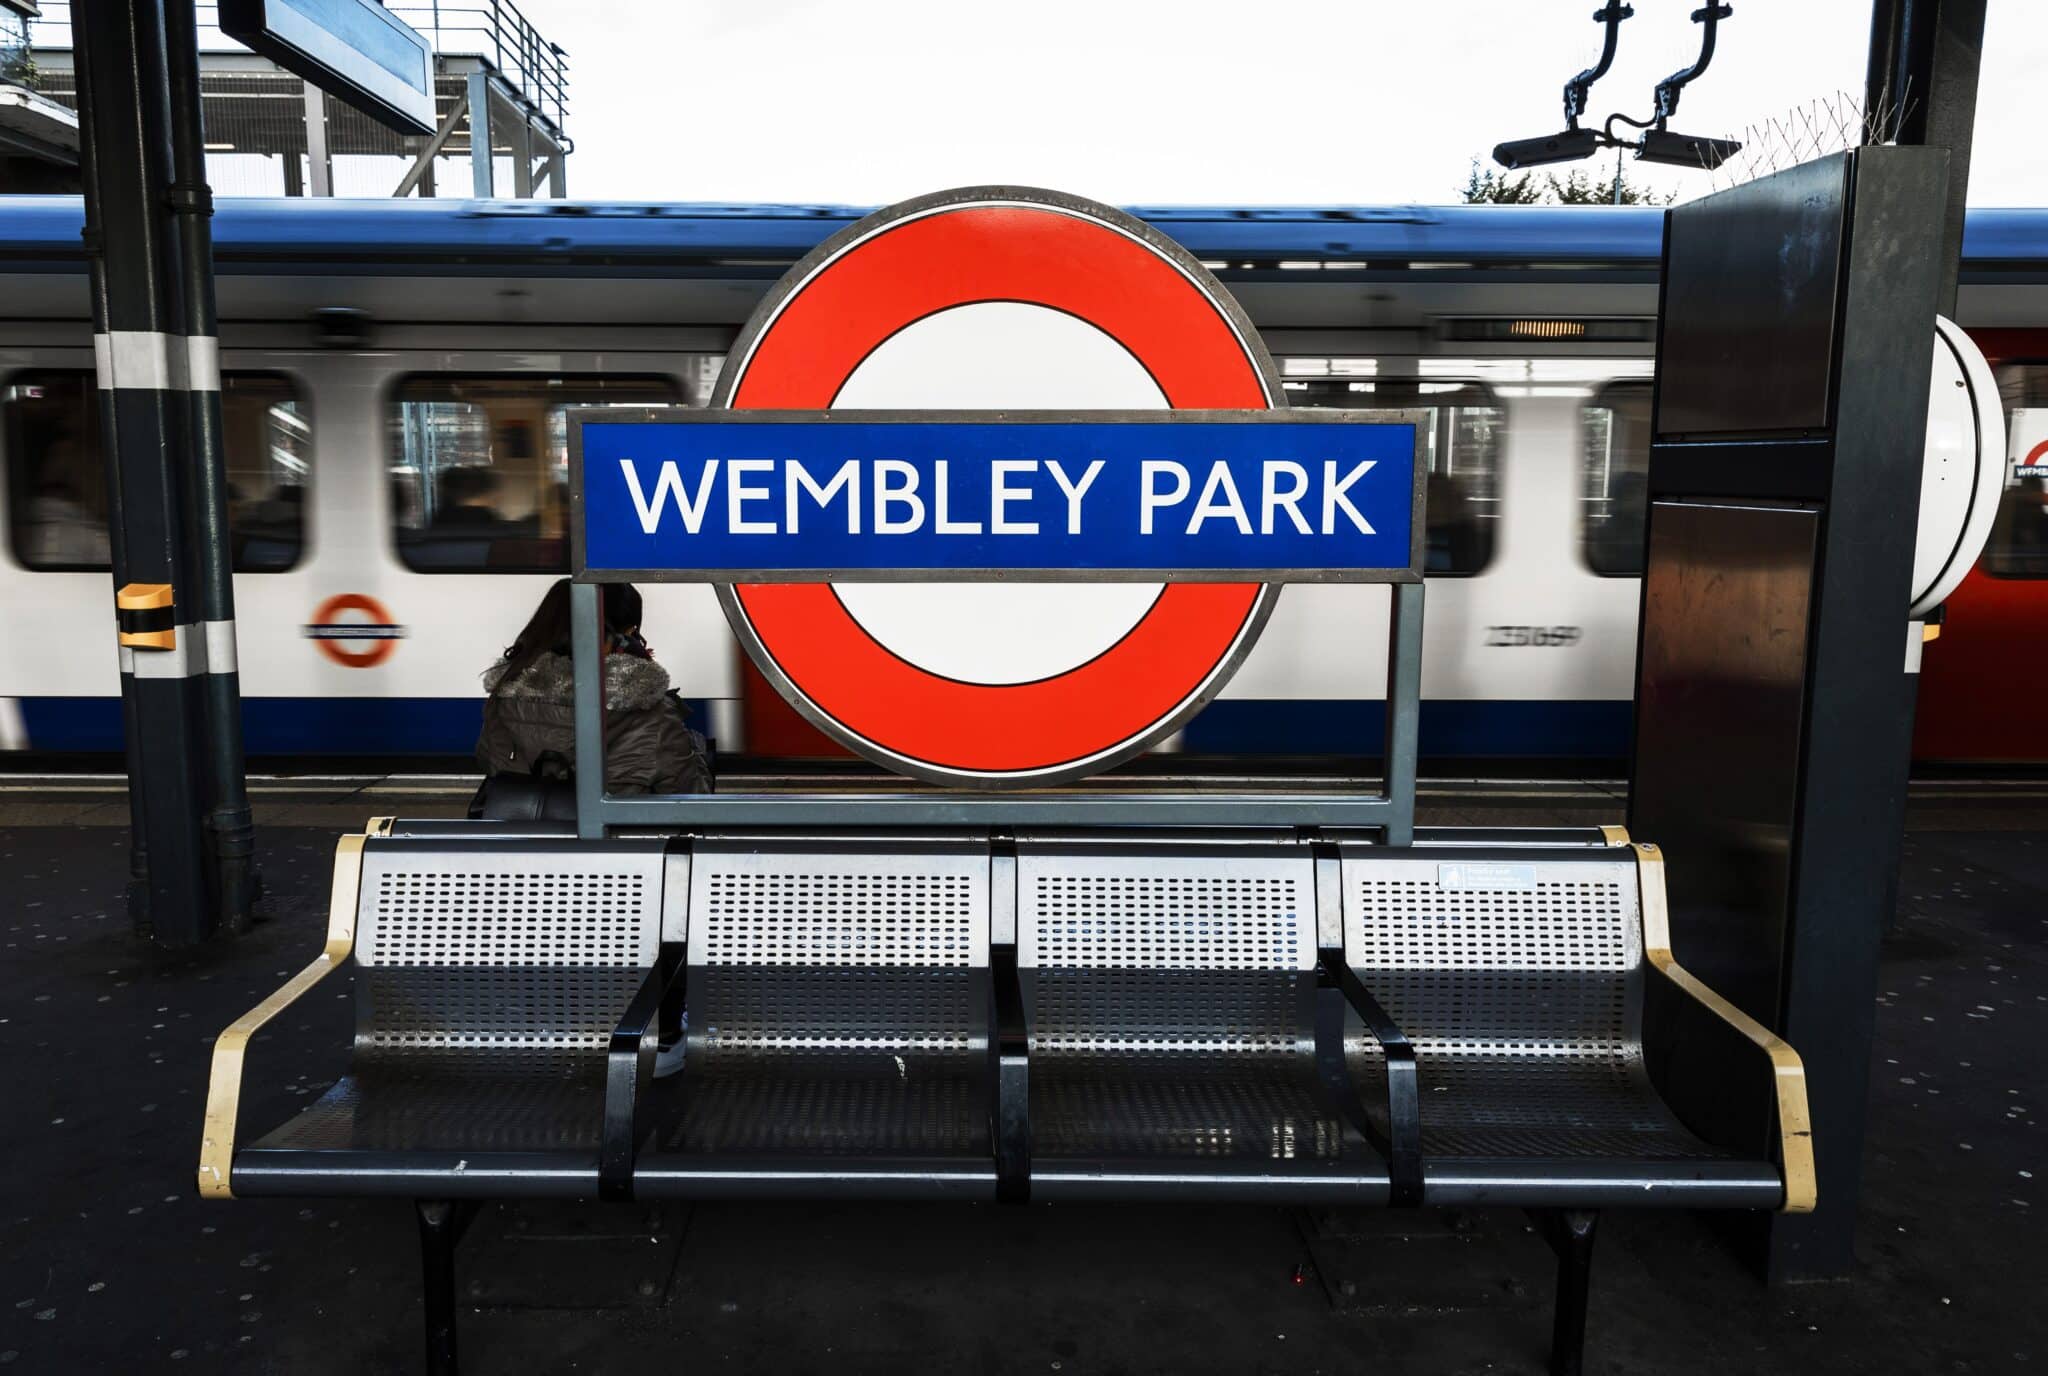 Wembley Park Underground station